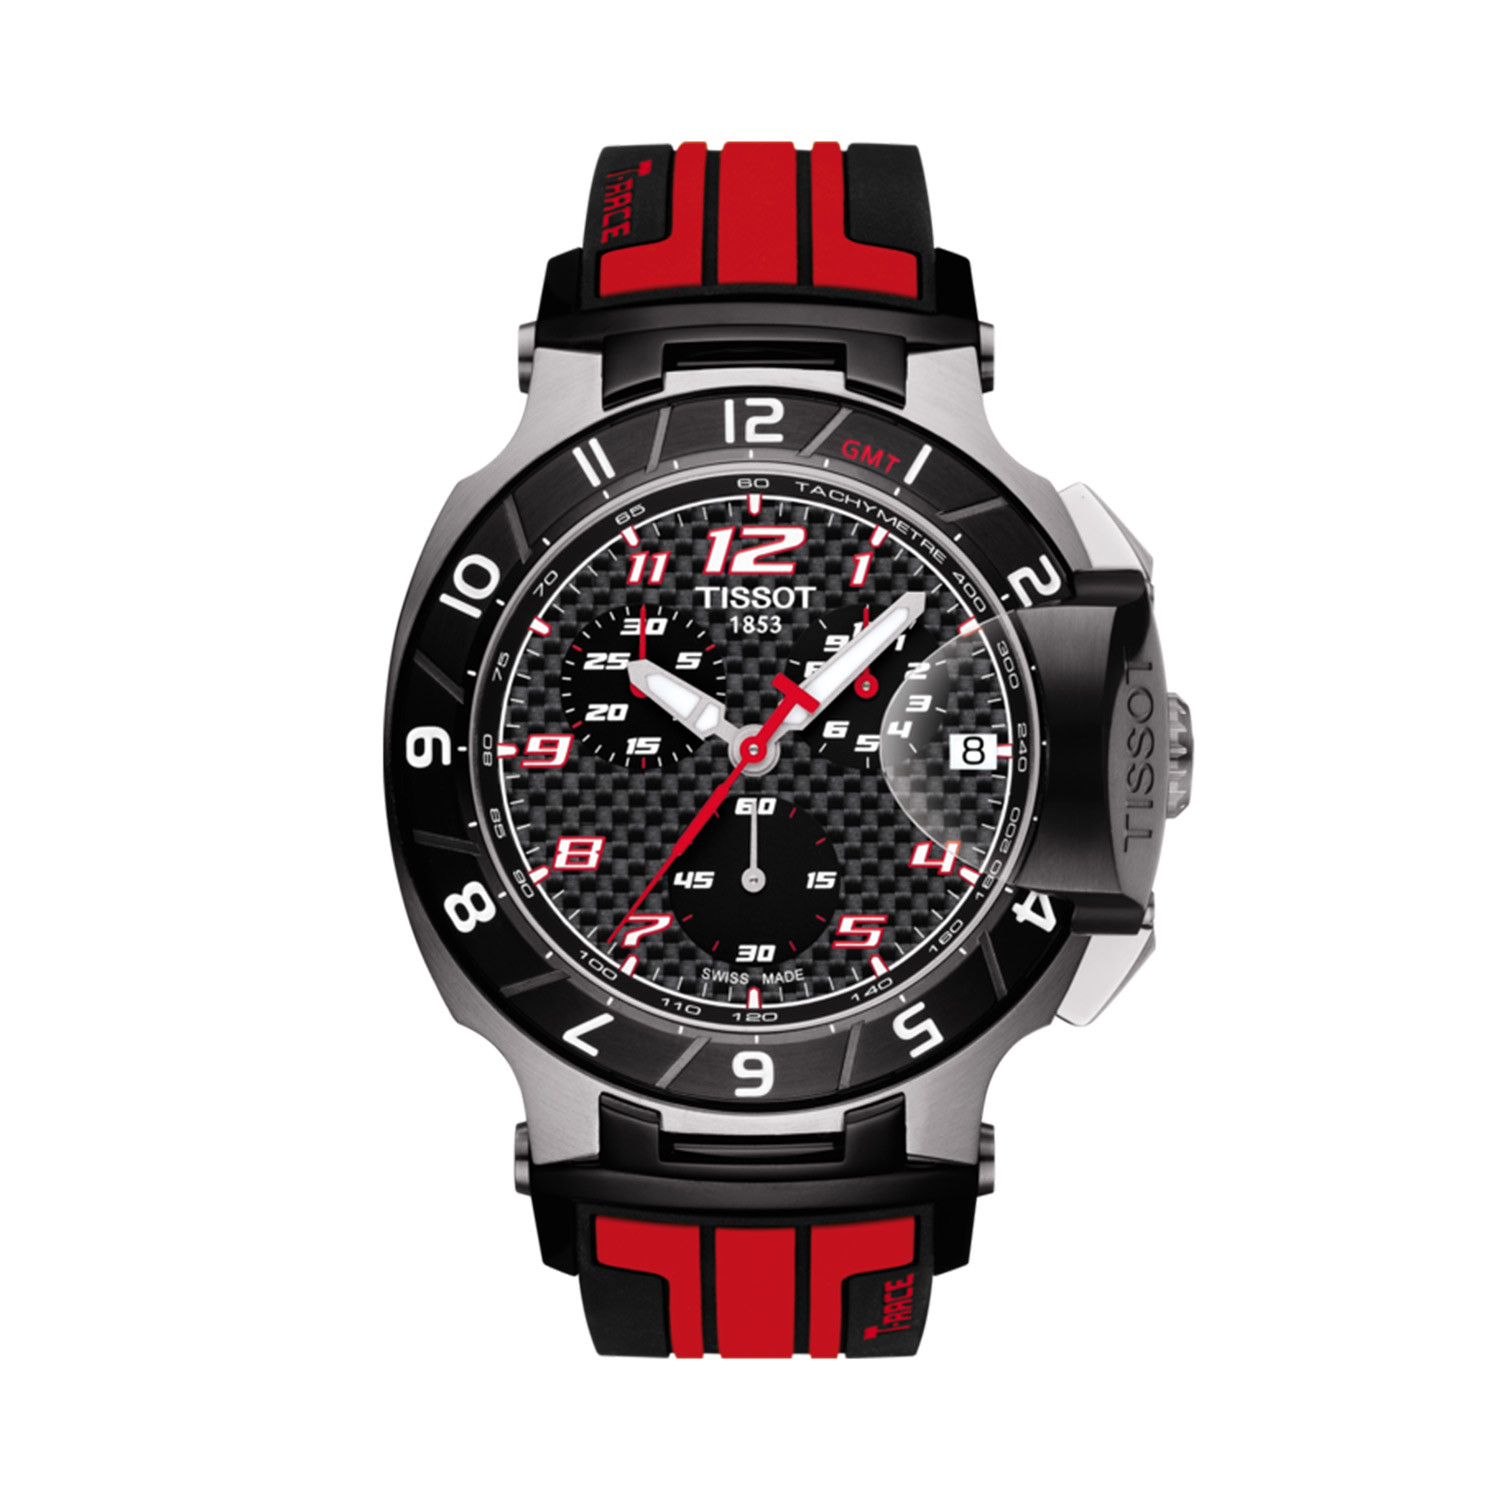 Tissot T Race Motogp Chronograph Quartz Limited Edition T048 417 27 207 01 Swatch Group